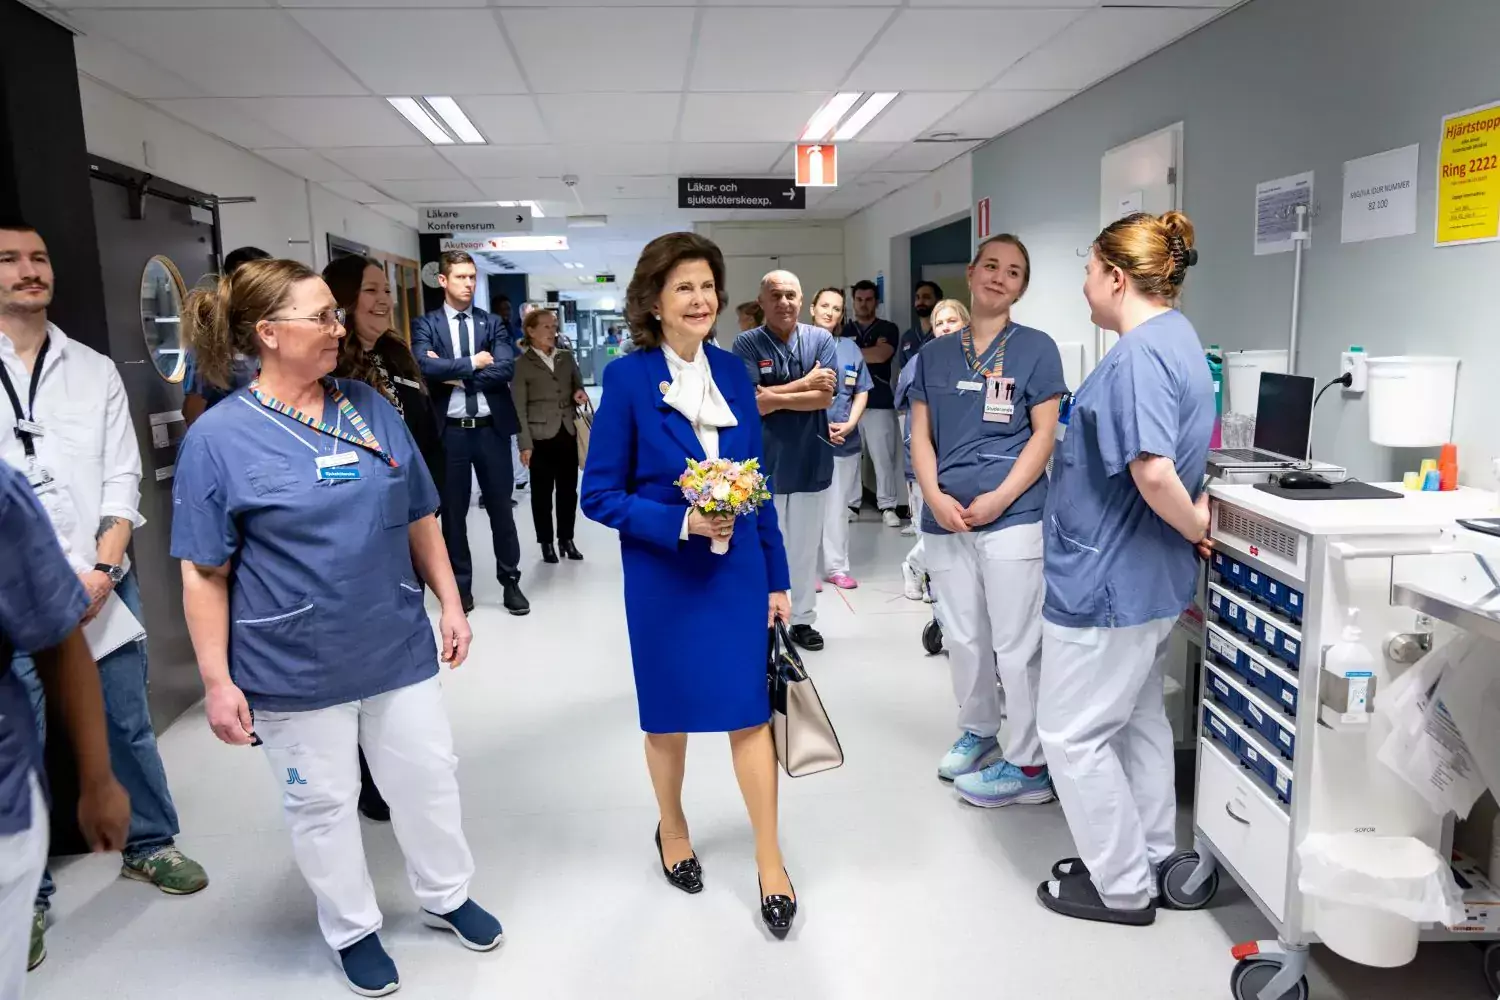 Drottning Silvia på rundvandring i sjukhuset. Gåendes i sjukshuskorridoren omgiven av medarbetare från sjukhuset.